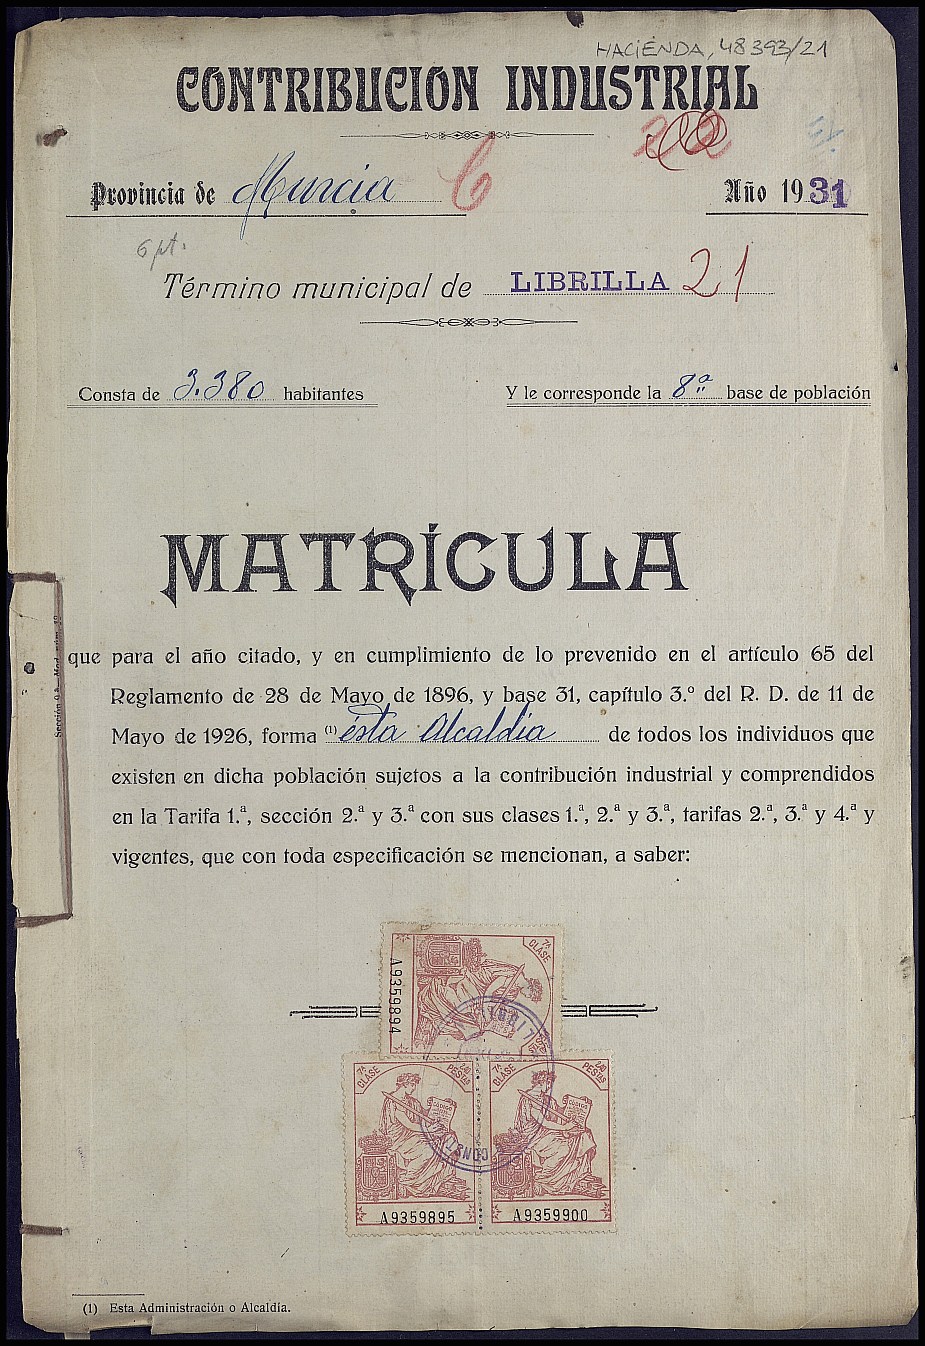 Matrícula de la contribución industrial de Librilla. Año 1931.